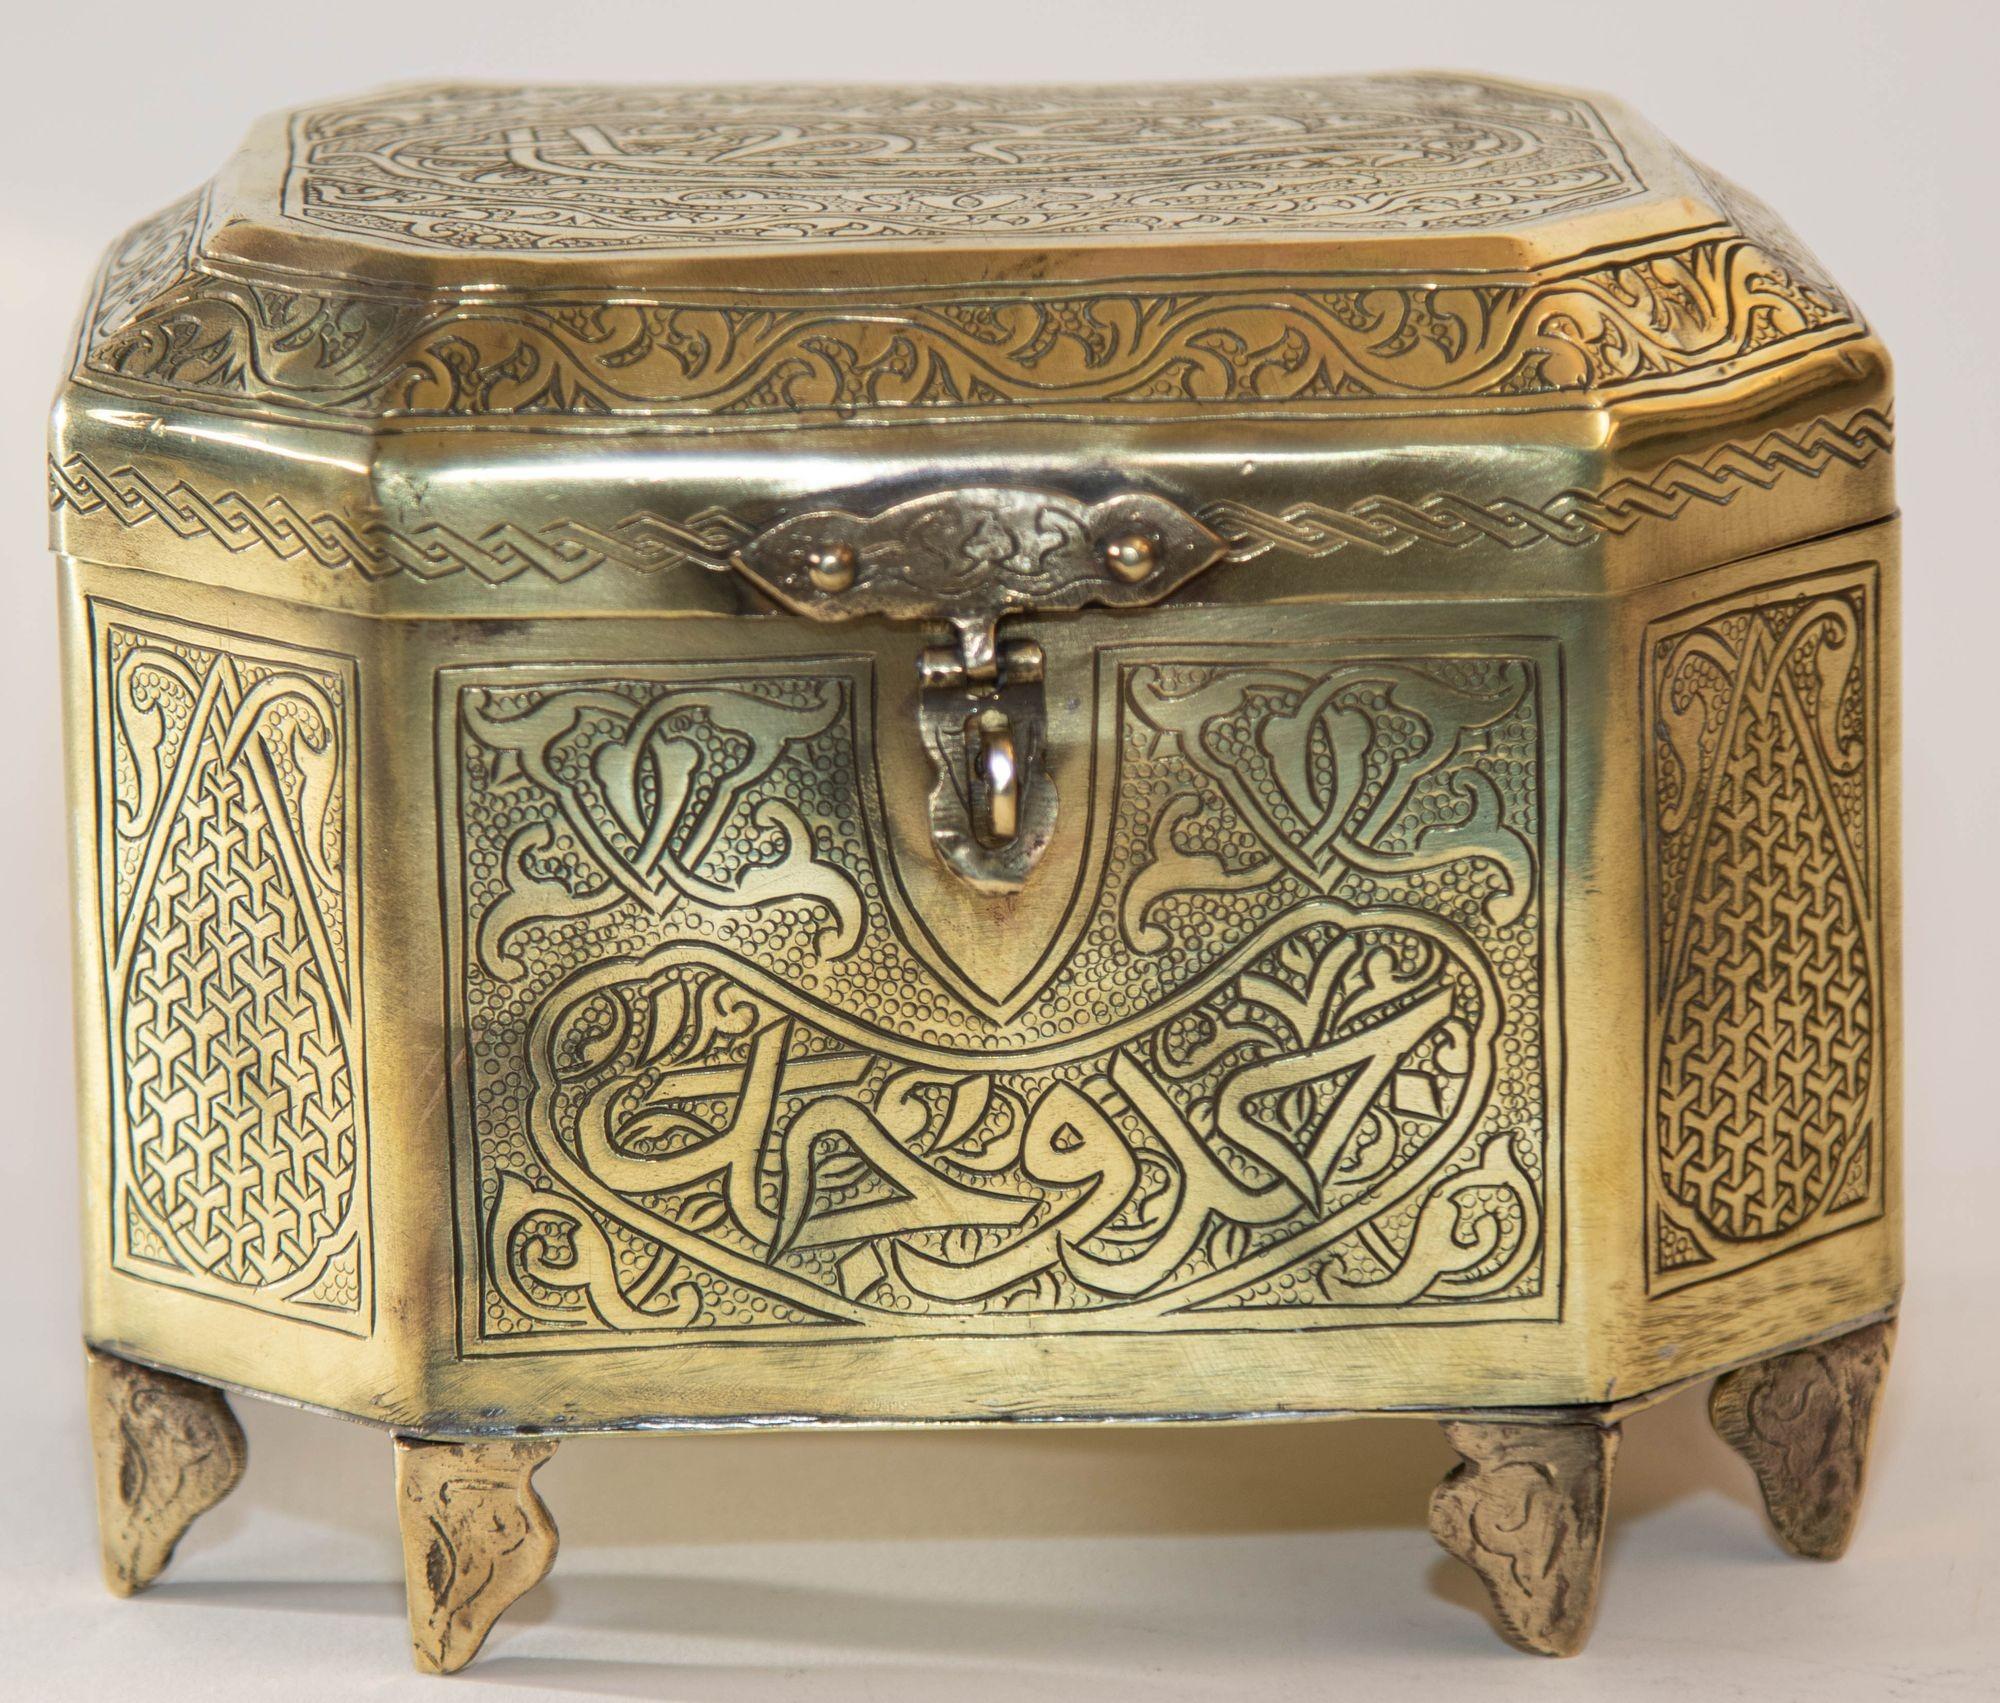 Ancienne boîte à bijoux islamique en laiton de style Mamluke Damascène.
Boîte mauresque en laiton damassé du Moyen-Orient, vers 1910-1920.
Boîte à bijoux ancienne en laiton damasquiné syrien, martelée et gravée à la main.
Boîte à bibelots en laiton